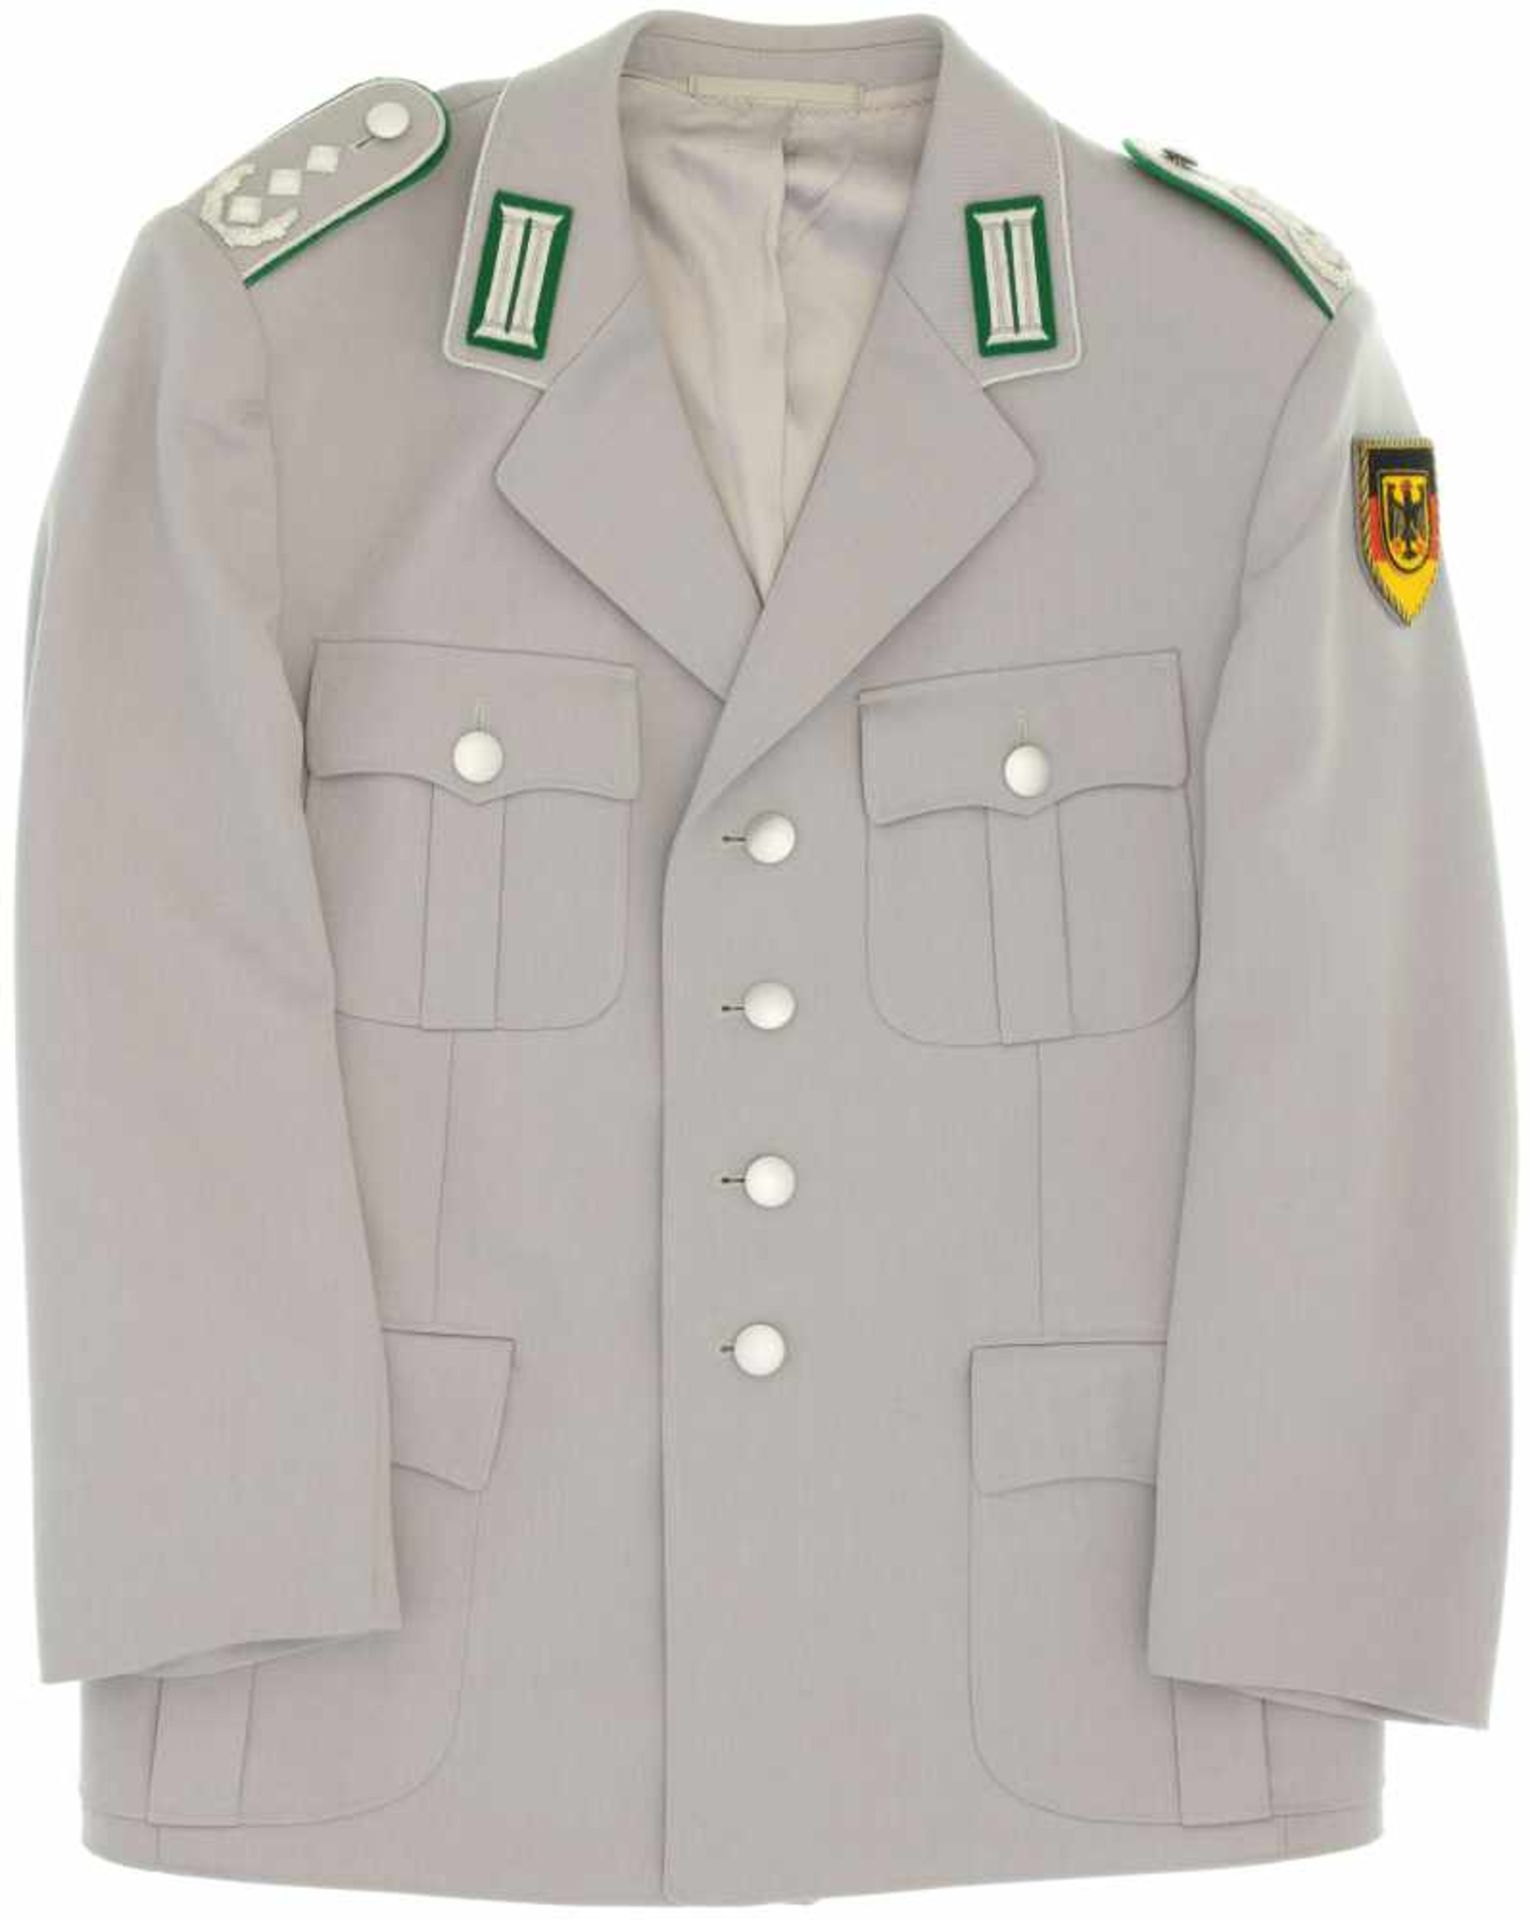 Offiziers-Dienstanzugsjacke des Heeres, Oberst Infanterie und Panzergrenadiere, Deutschland.